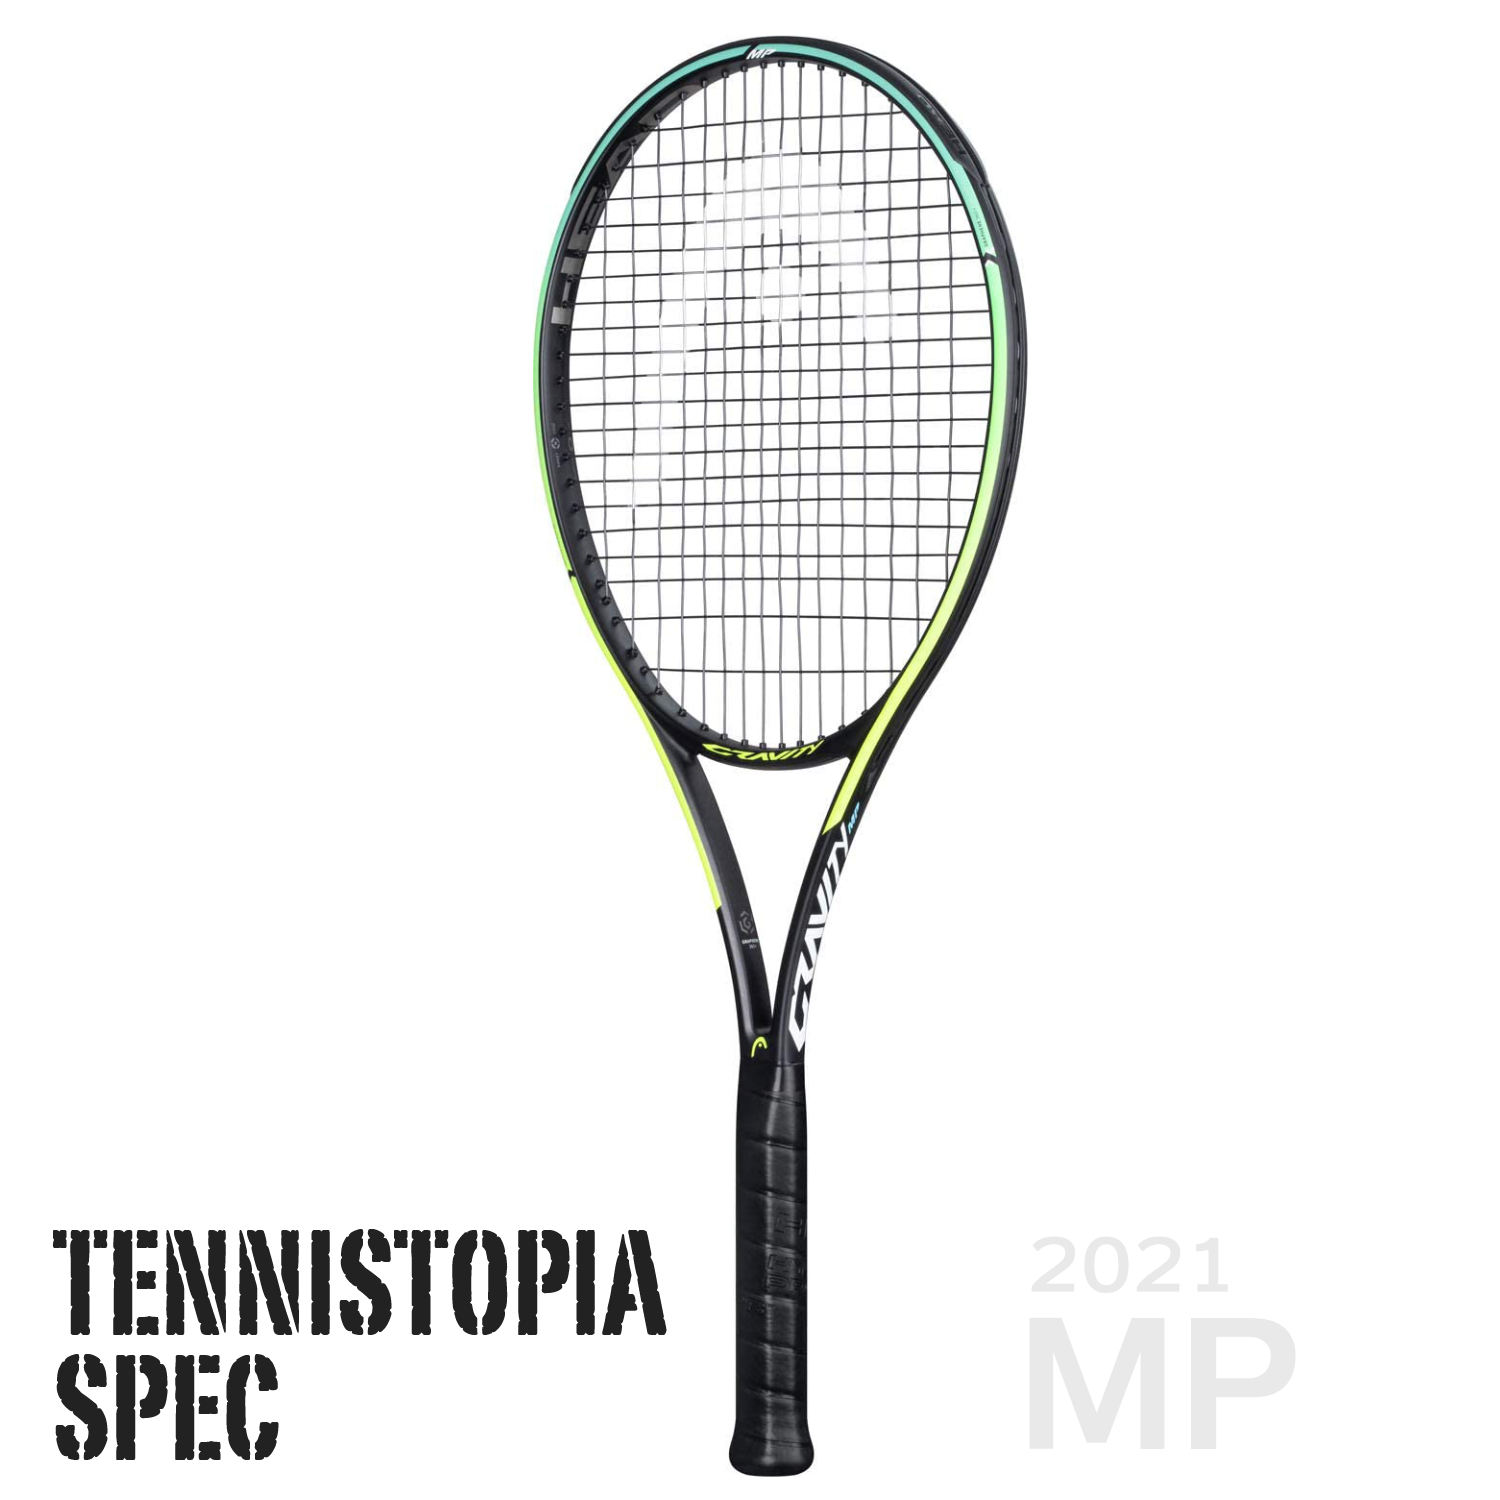 HEADグラビティPRO（オーセチック）テニストピアスペックⅢスポーツ